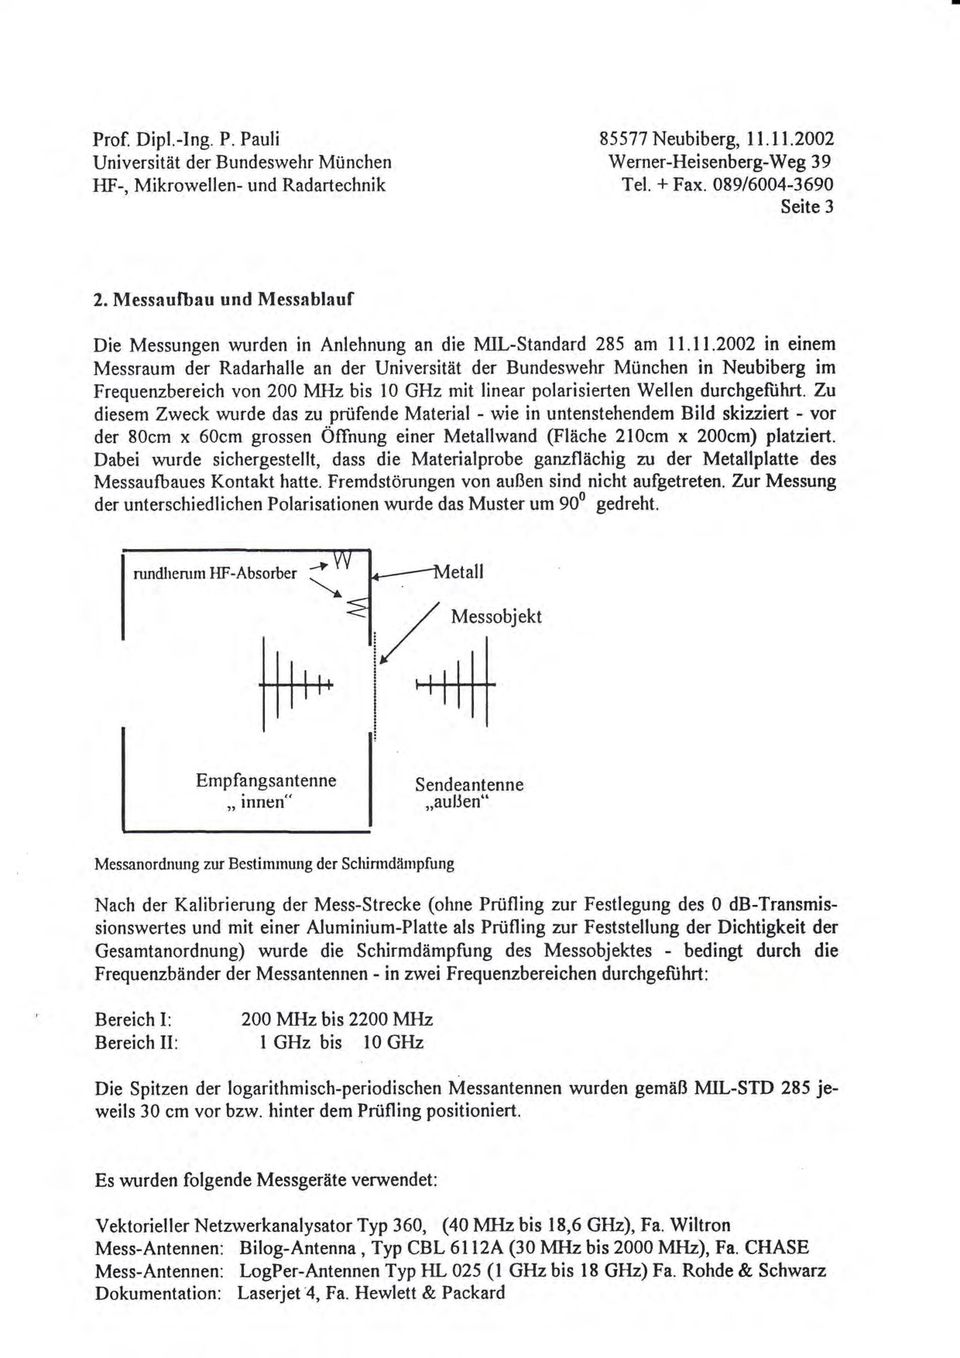 11.2002 in einem Messraum der Radarhalle an der Universität der Bundeswehr München in Neubiberg im Frequenzbereich von 200 MHz bis l0 GHz mit linear polarisierten Wellen durchgeftihrt.